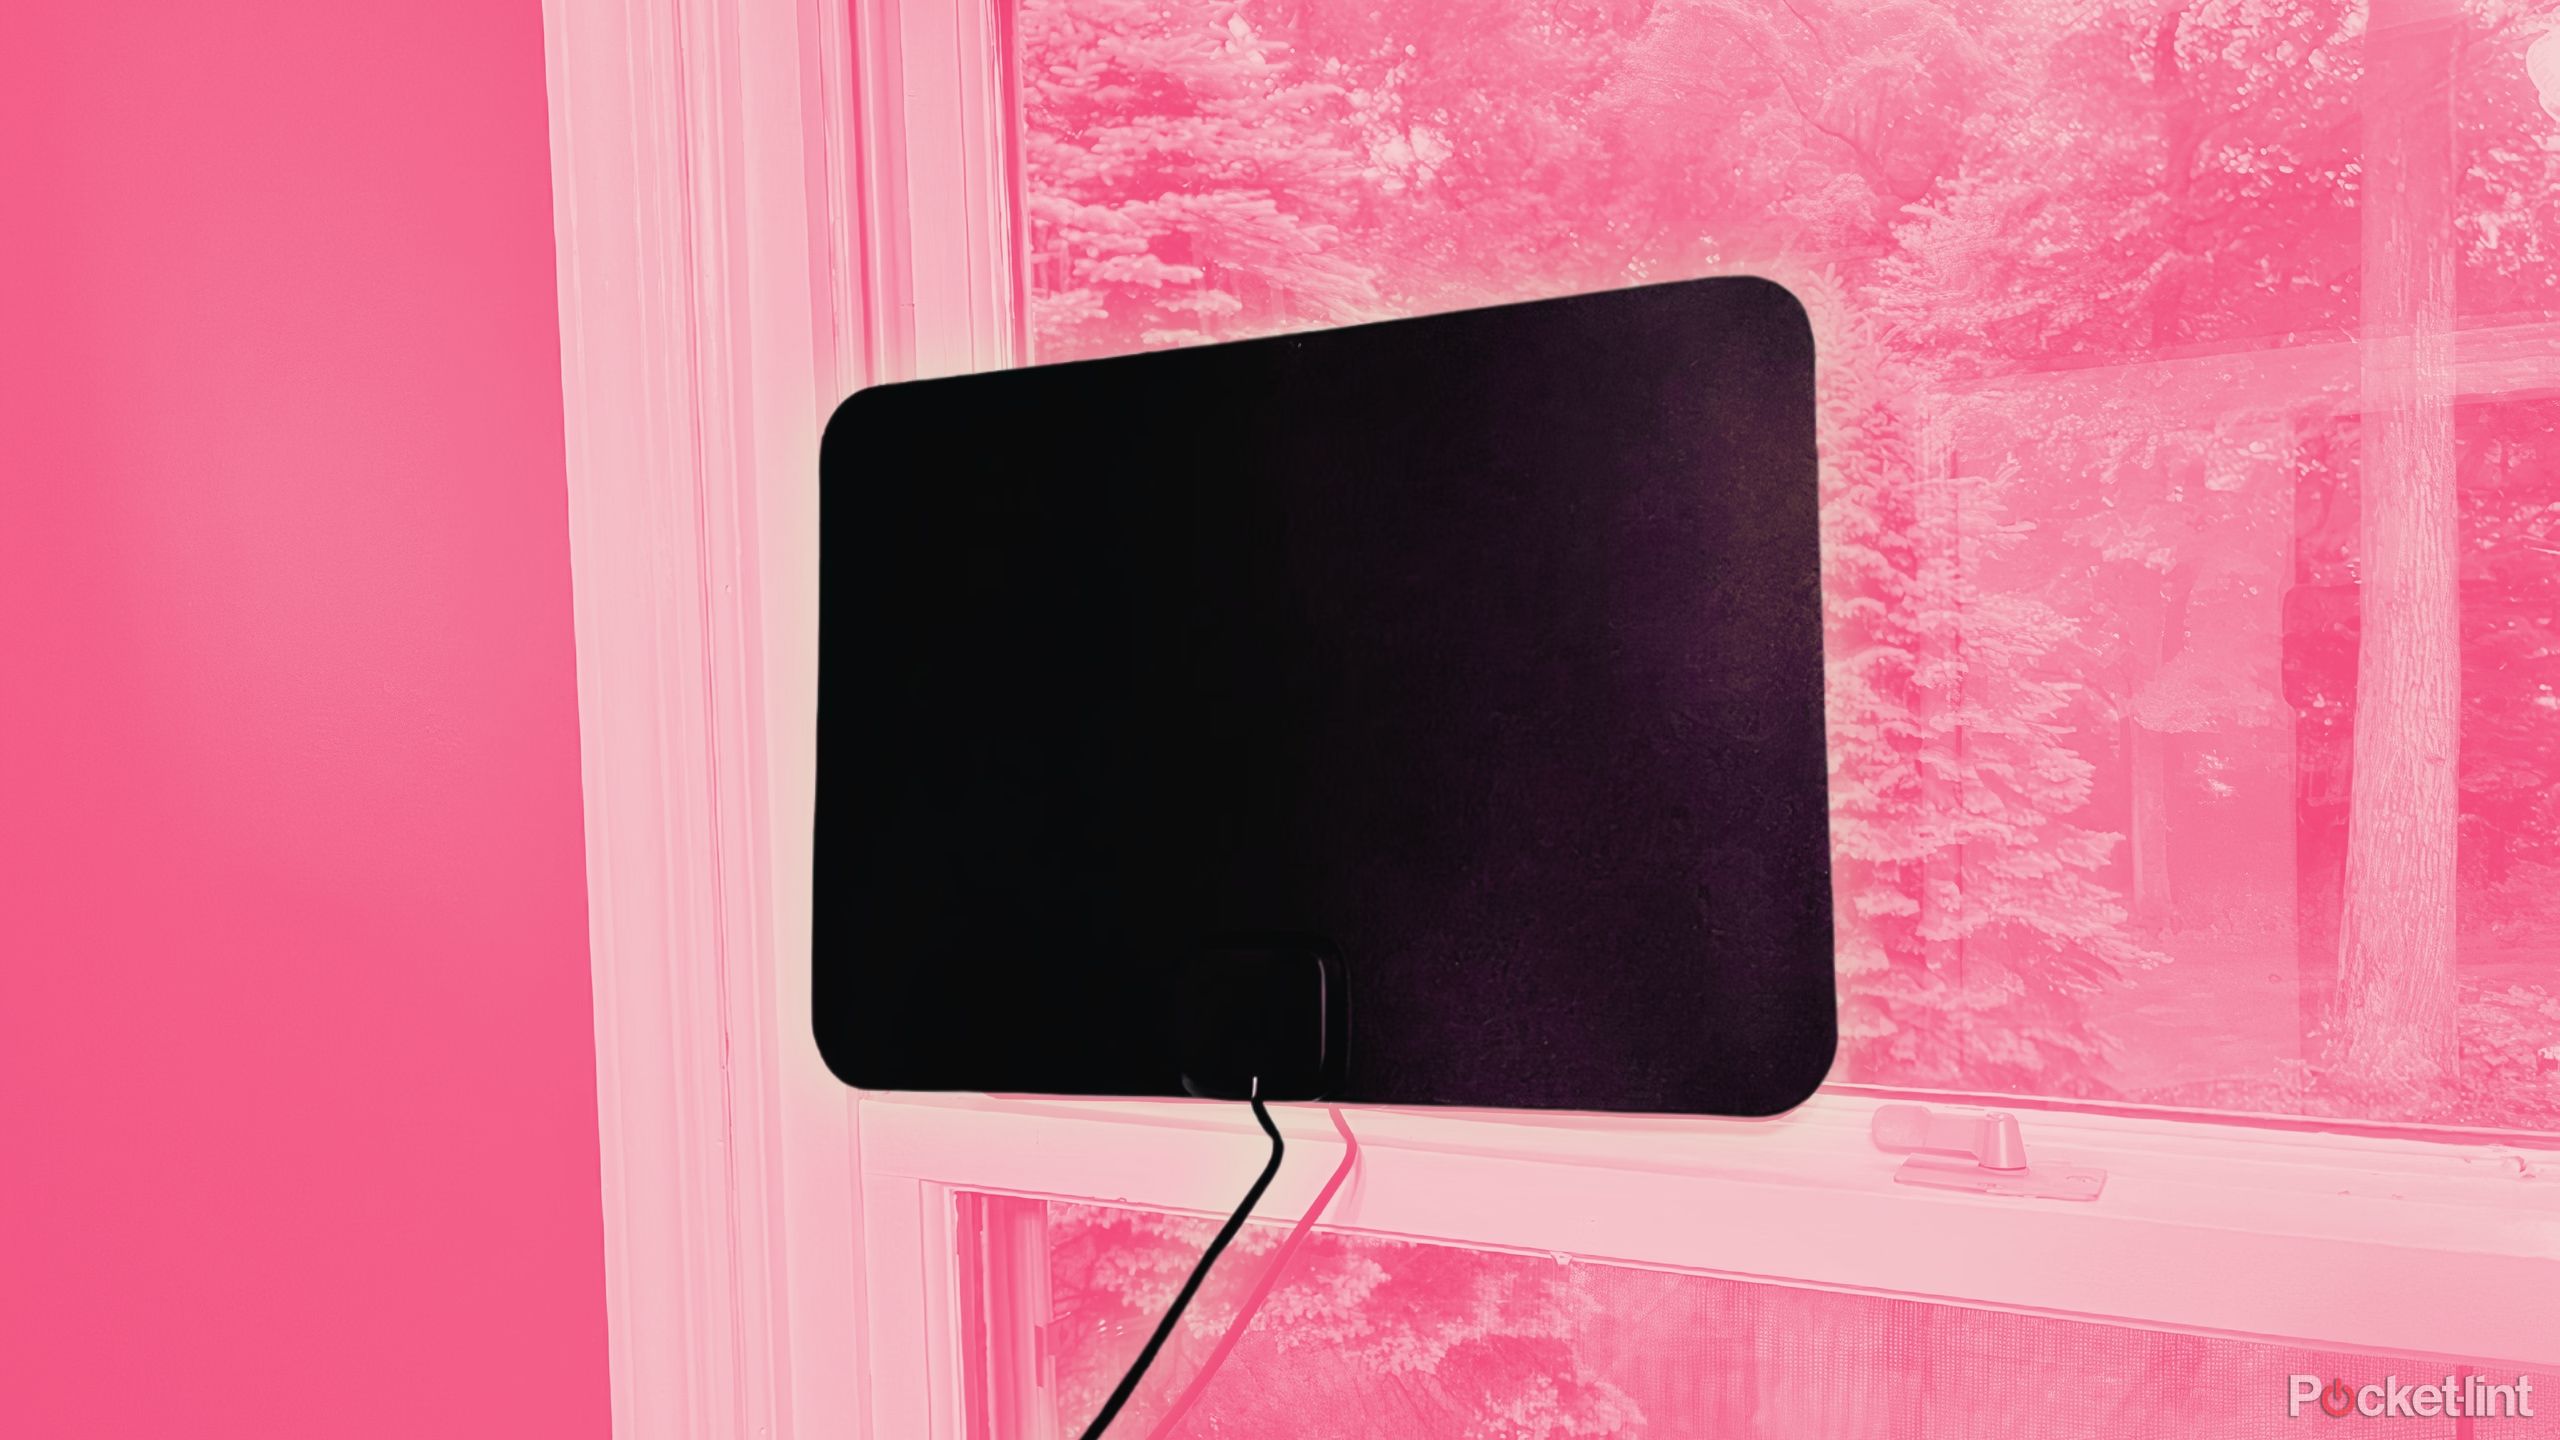 Gesobyte digital TV antenna on a window. 